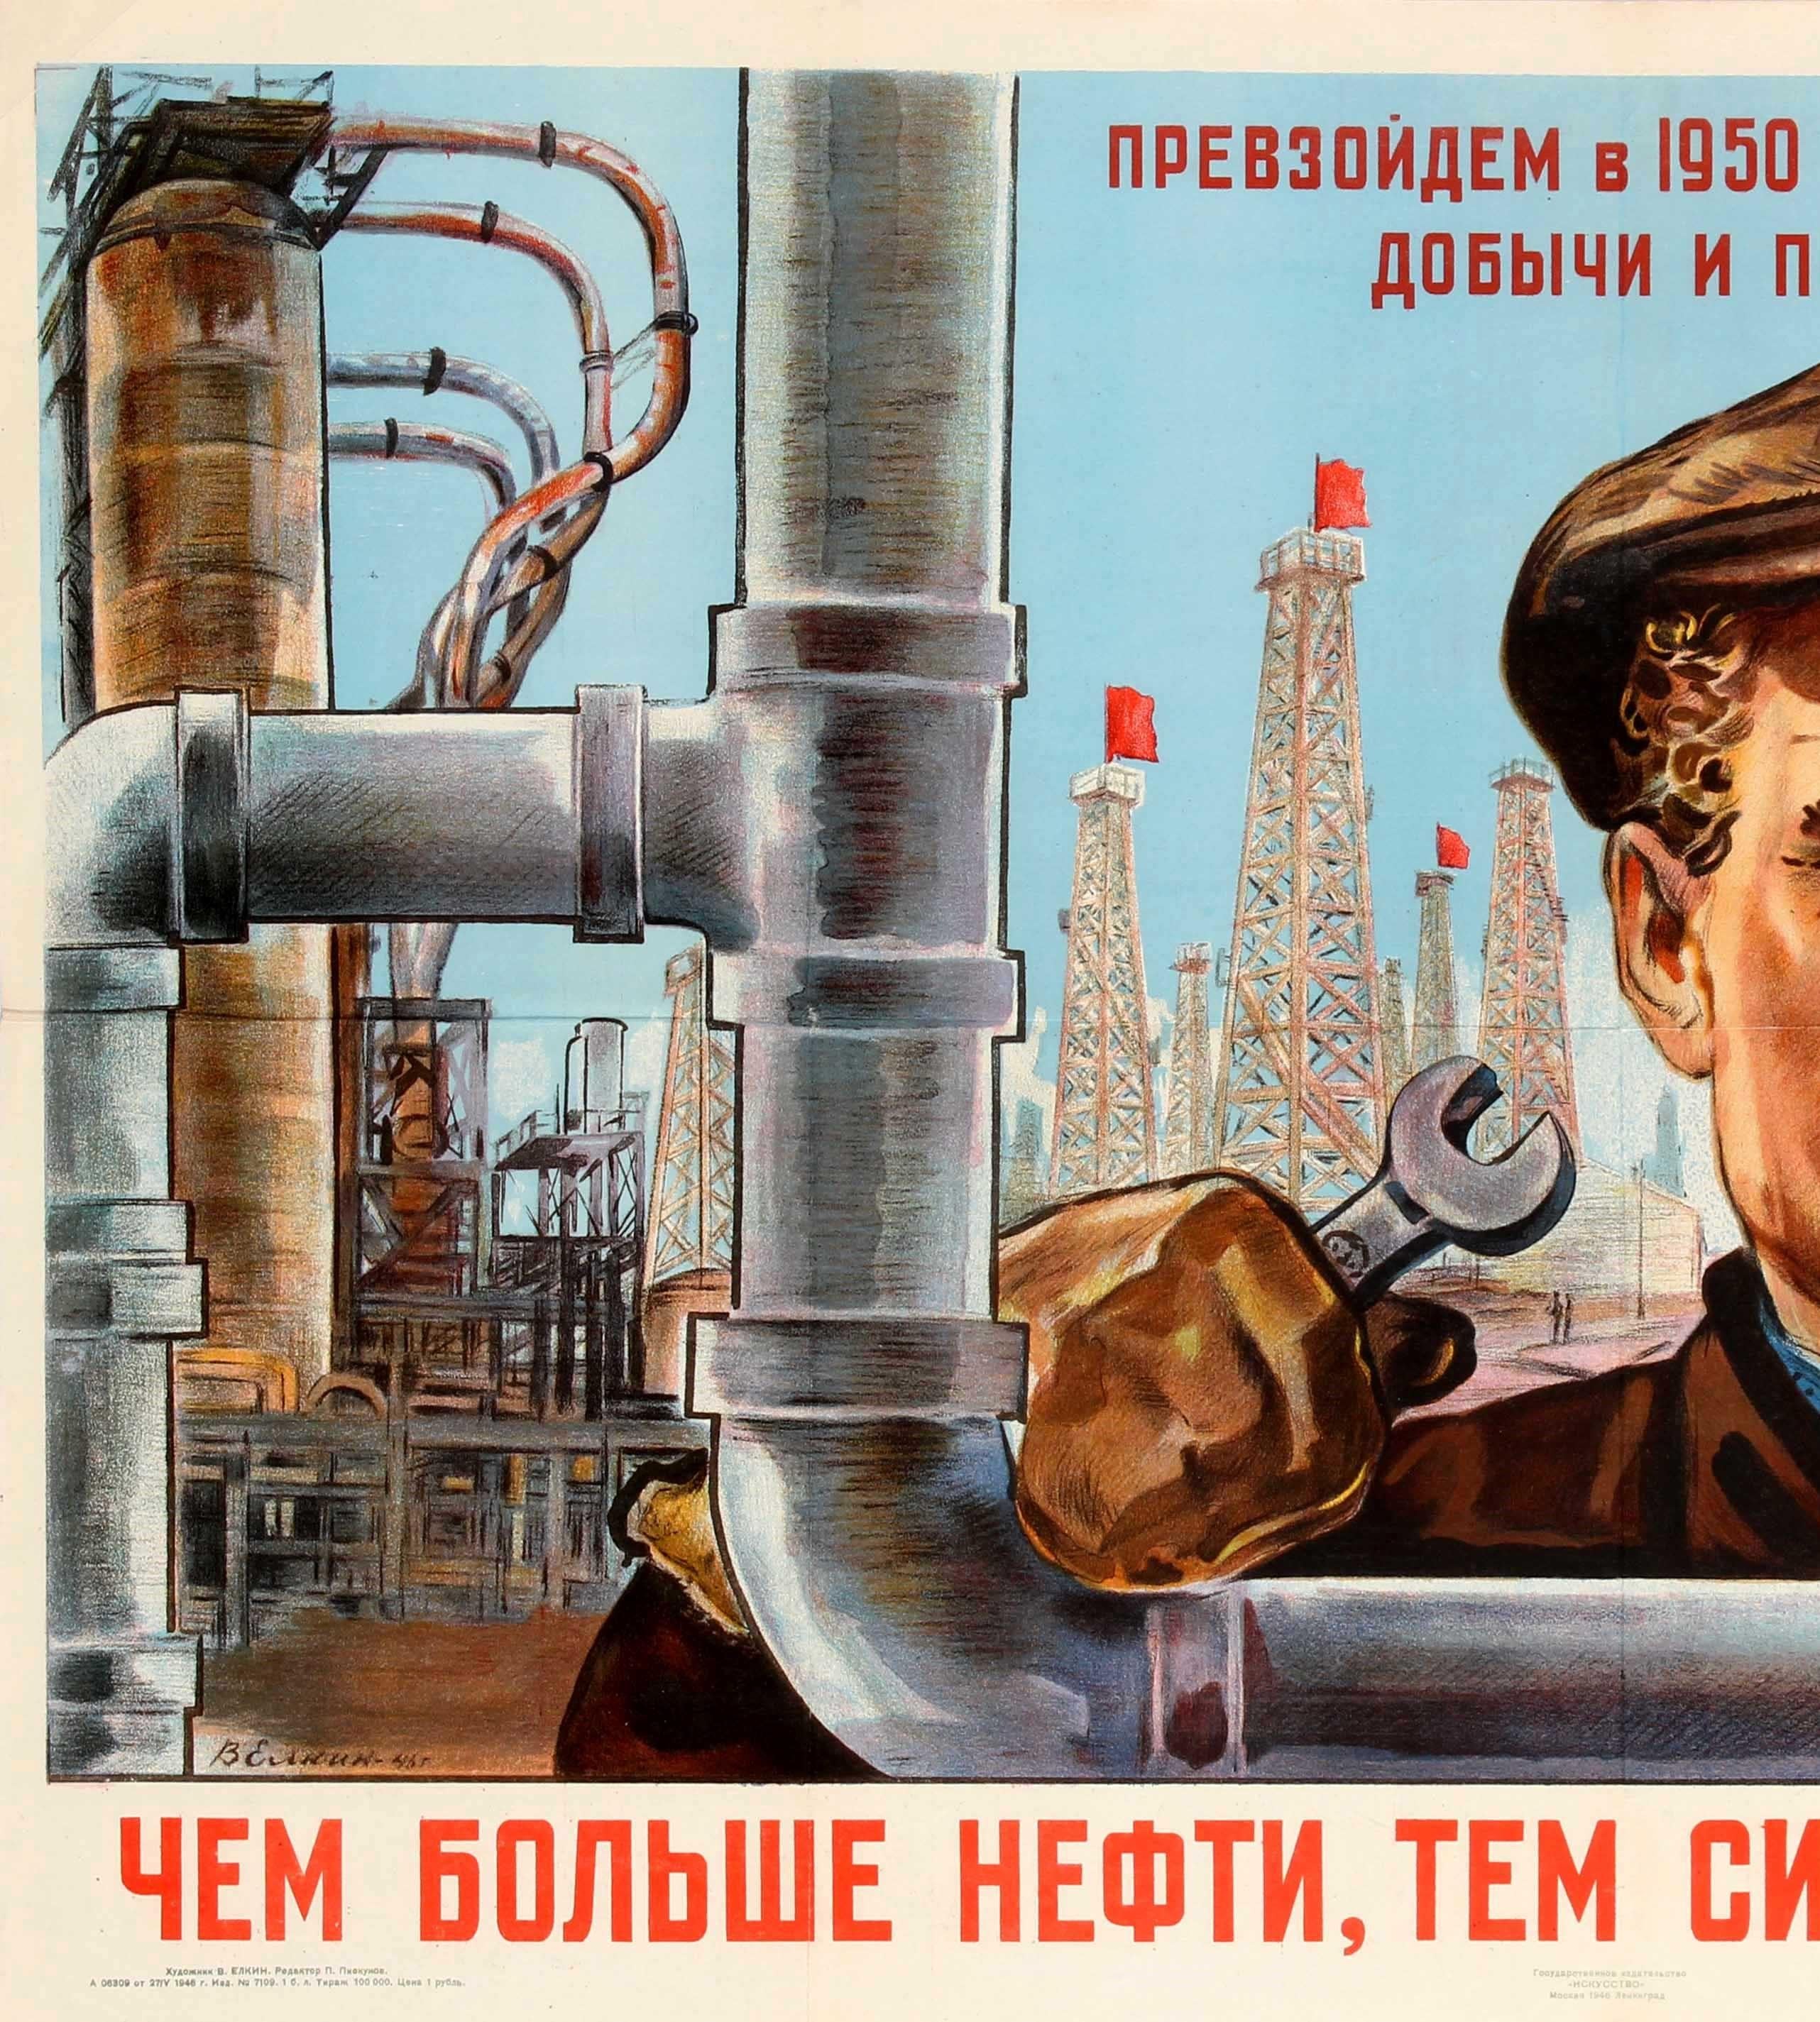 Original Vintage Soviet Russian Poster - More Oil For A Stronger Motherland USSR - Print by V. Elkin